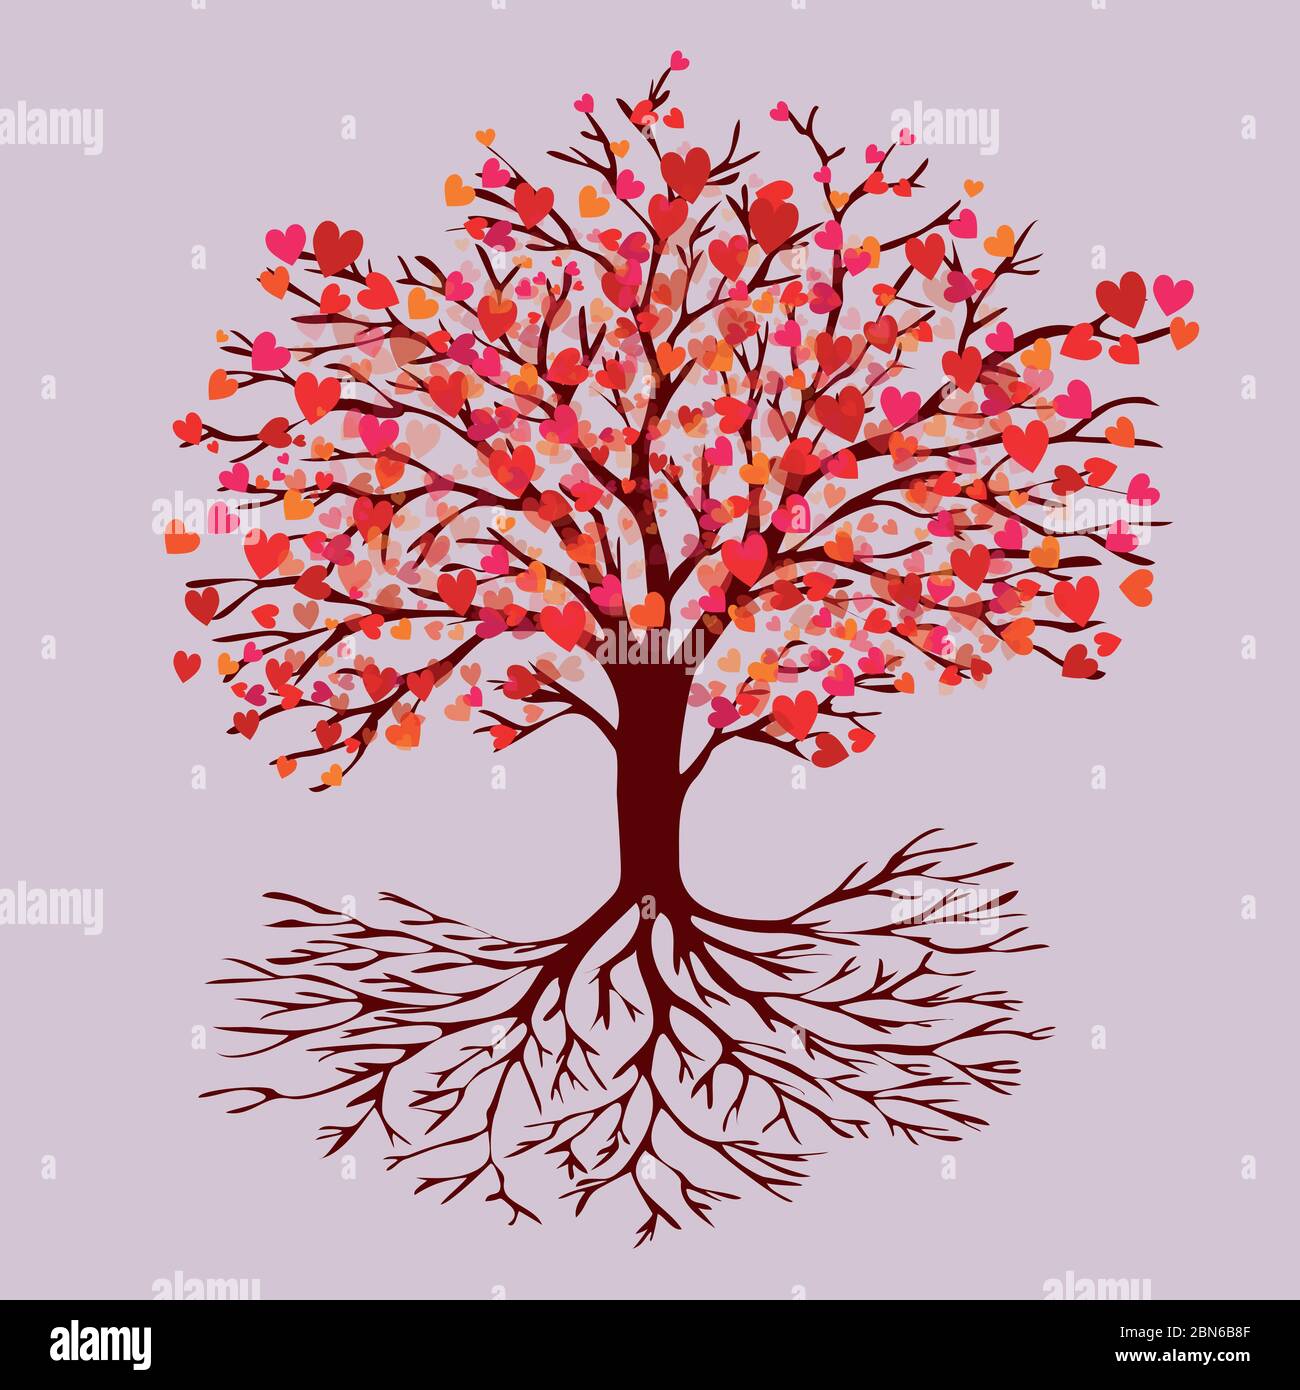 Ein Baum des Lebens mit herzförmigen roten Blütenblättern. Die Farben sind rot, rosa und orange Stock Vektor